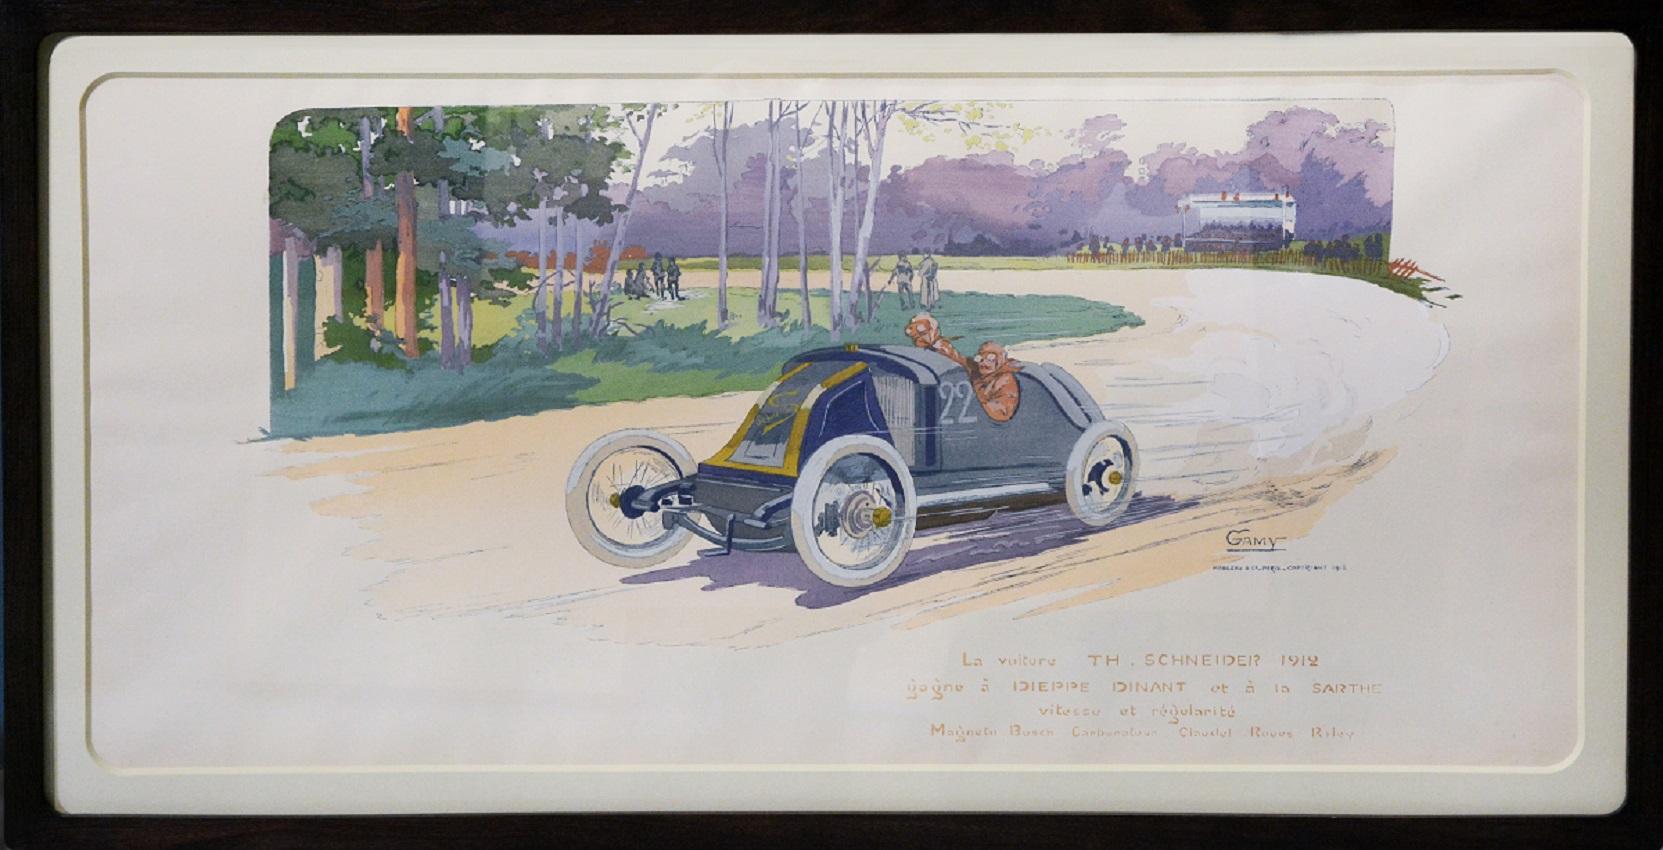 La Voiture Th. Schneider, Car -  1912  